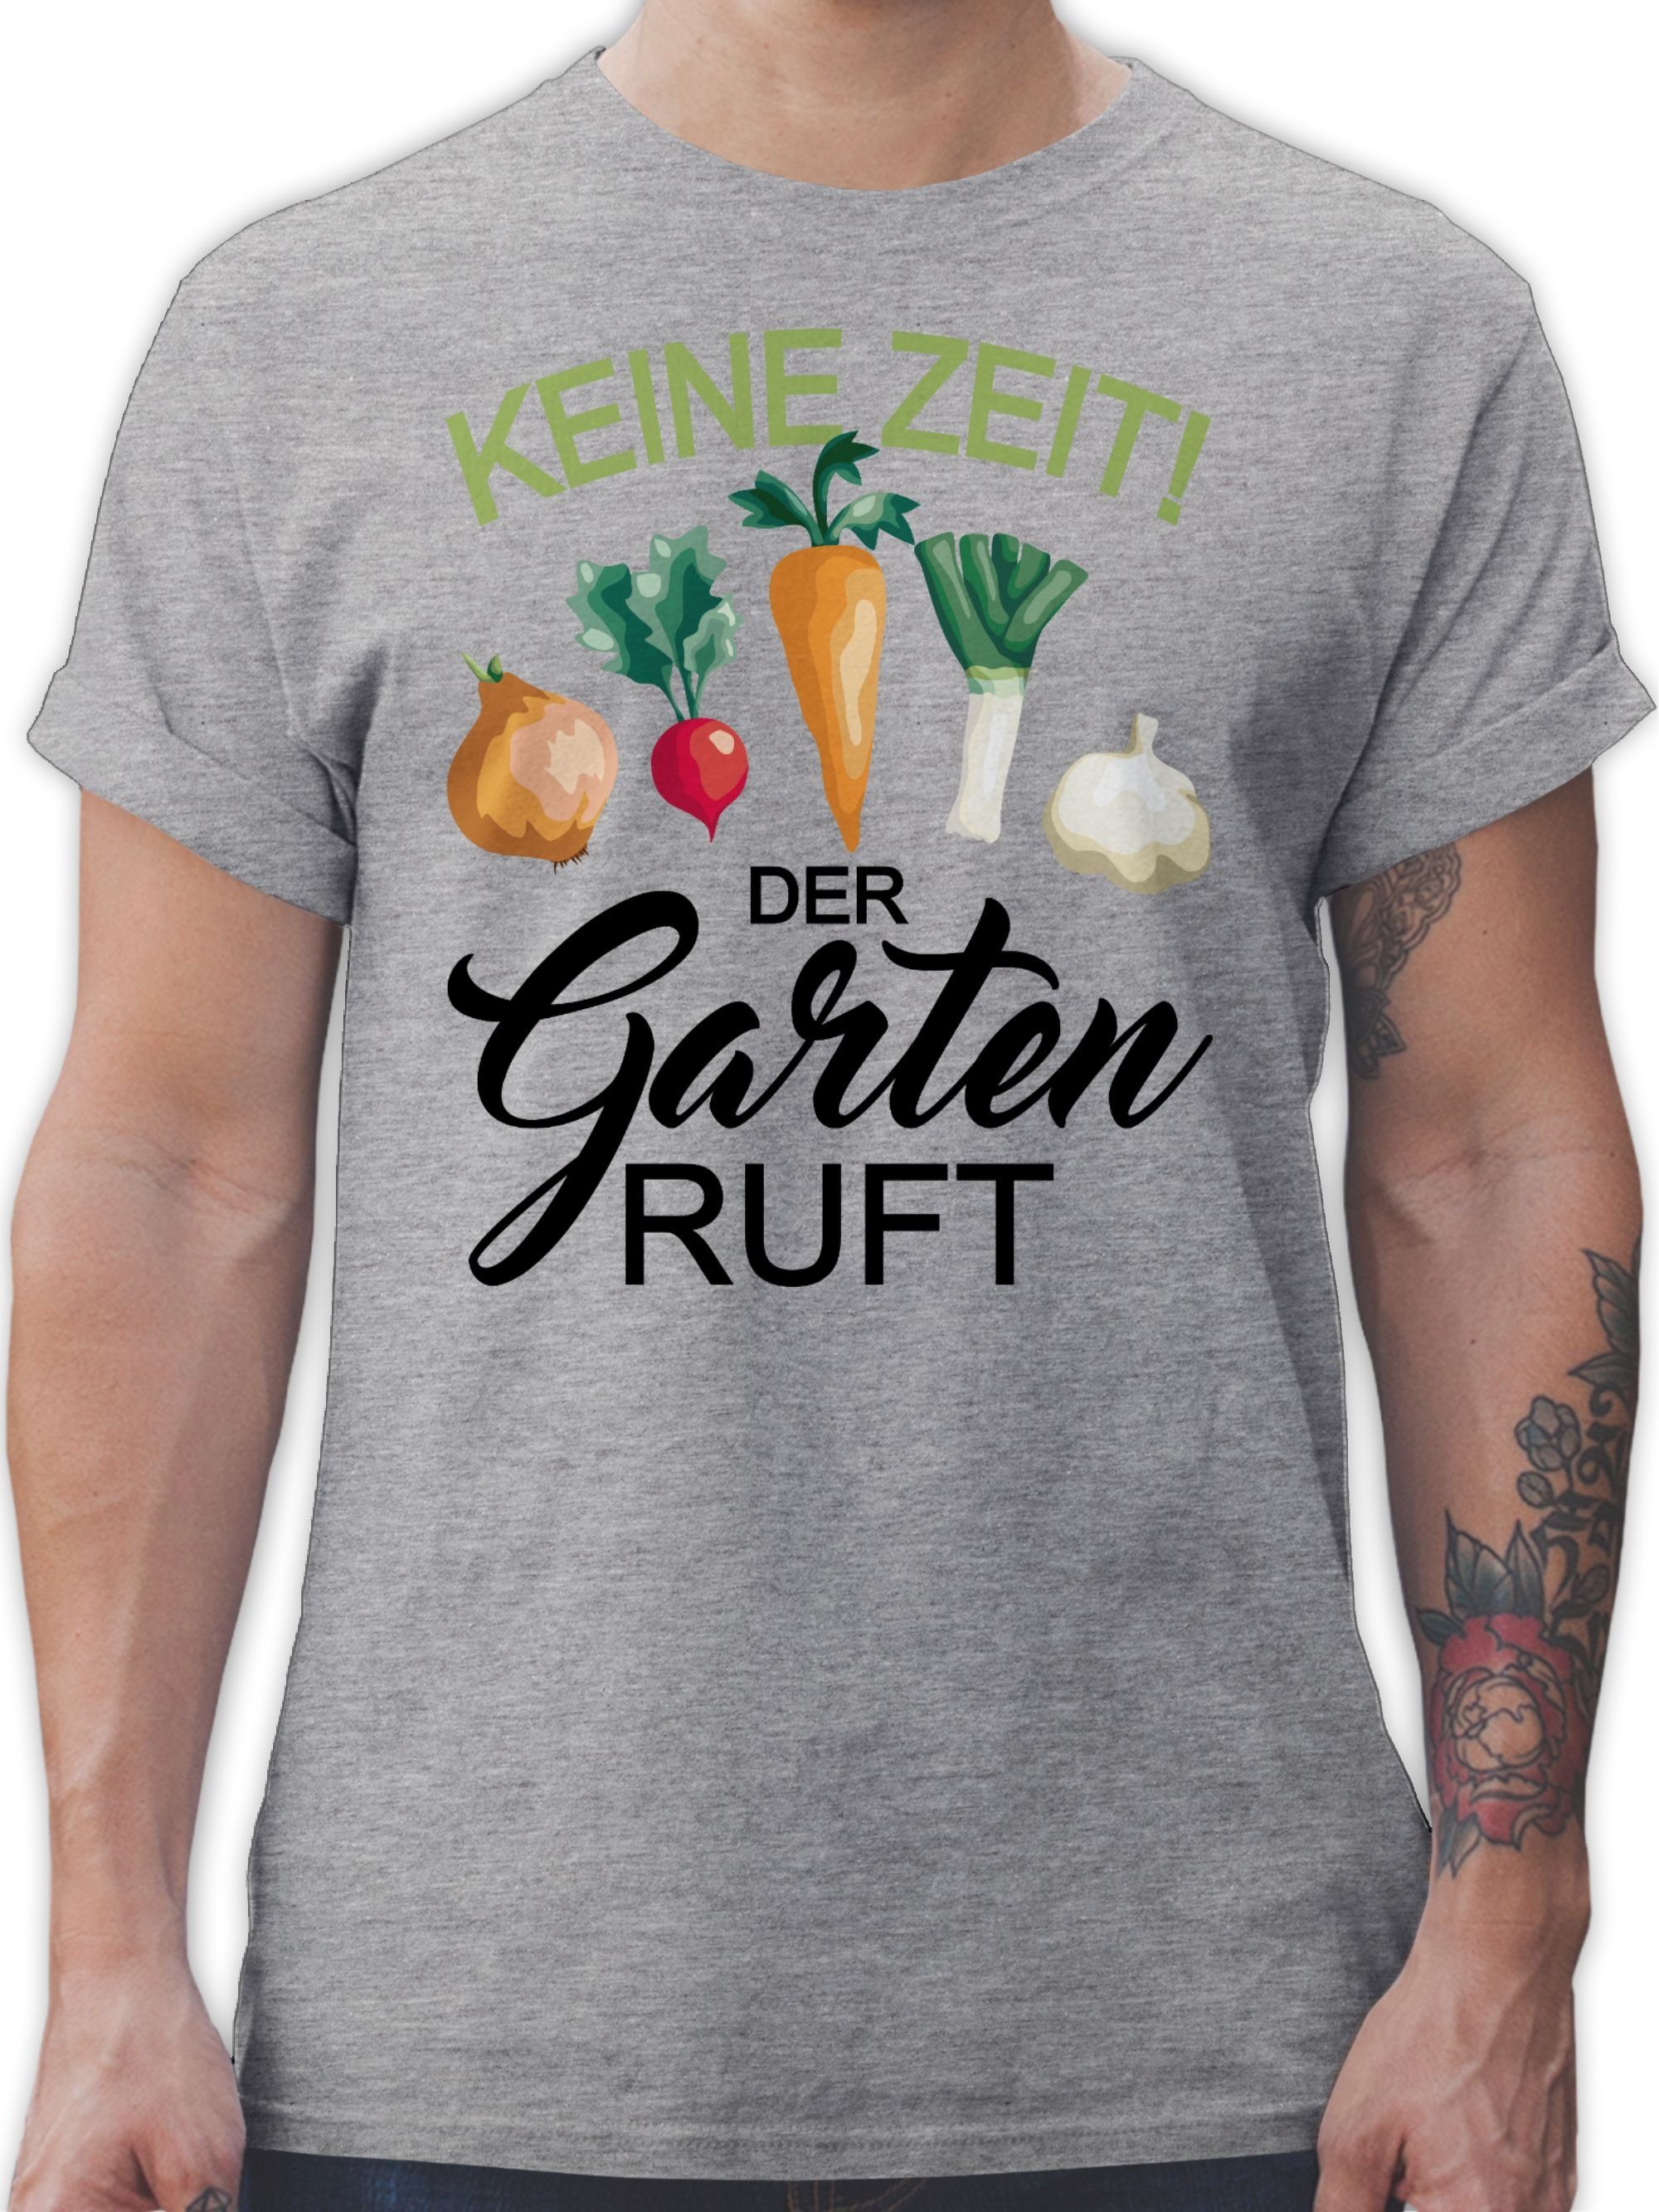 T-Shirt 3 der Hobby Keine ruft Outfit Zeit Grau meliert Shirtracer Garten